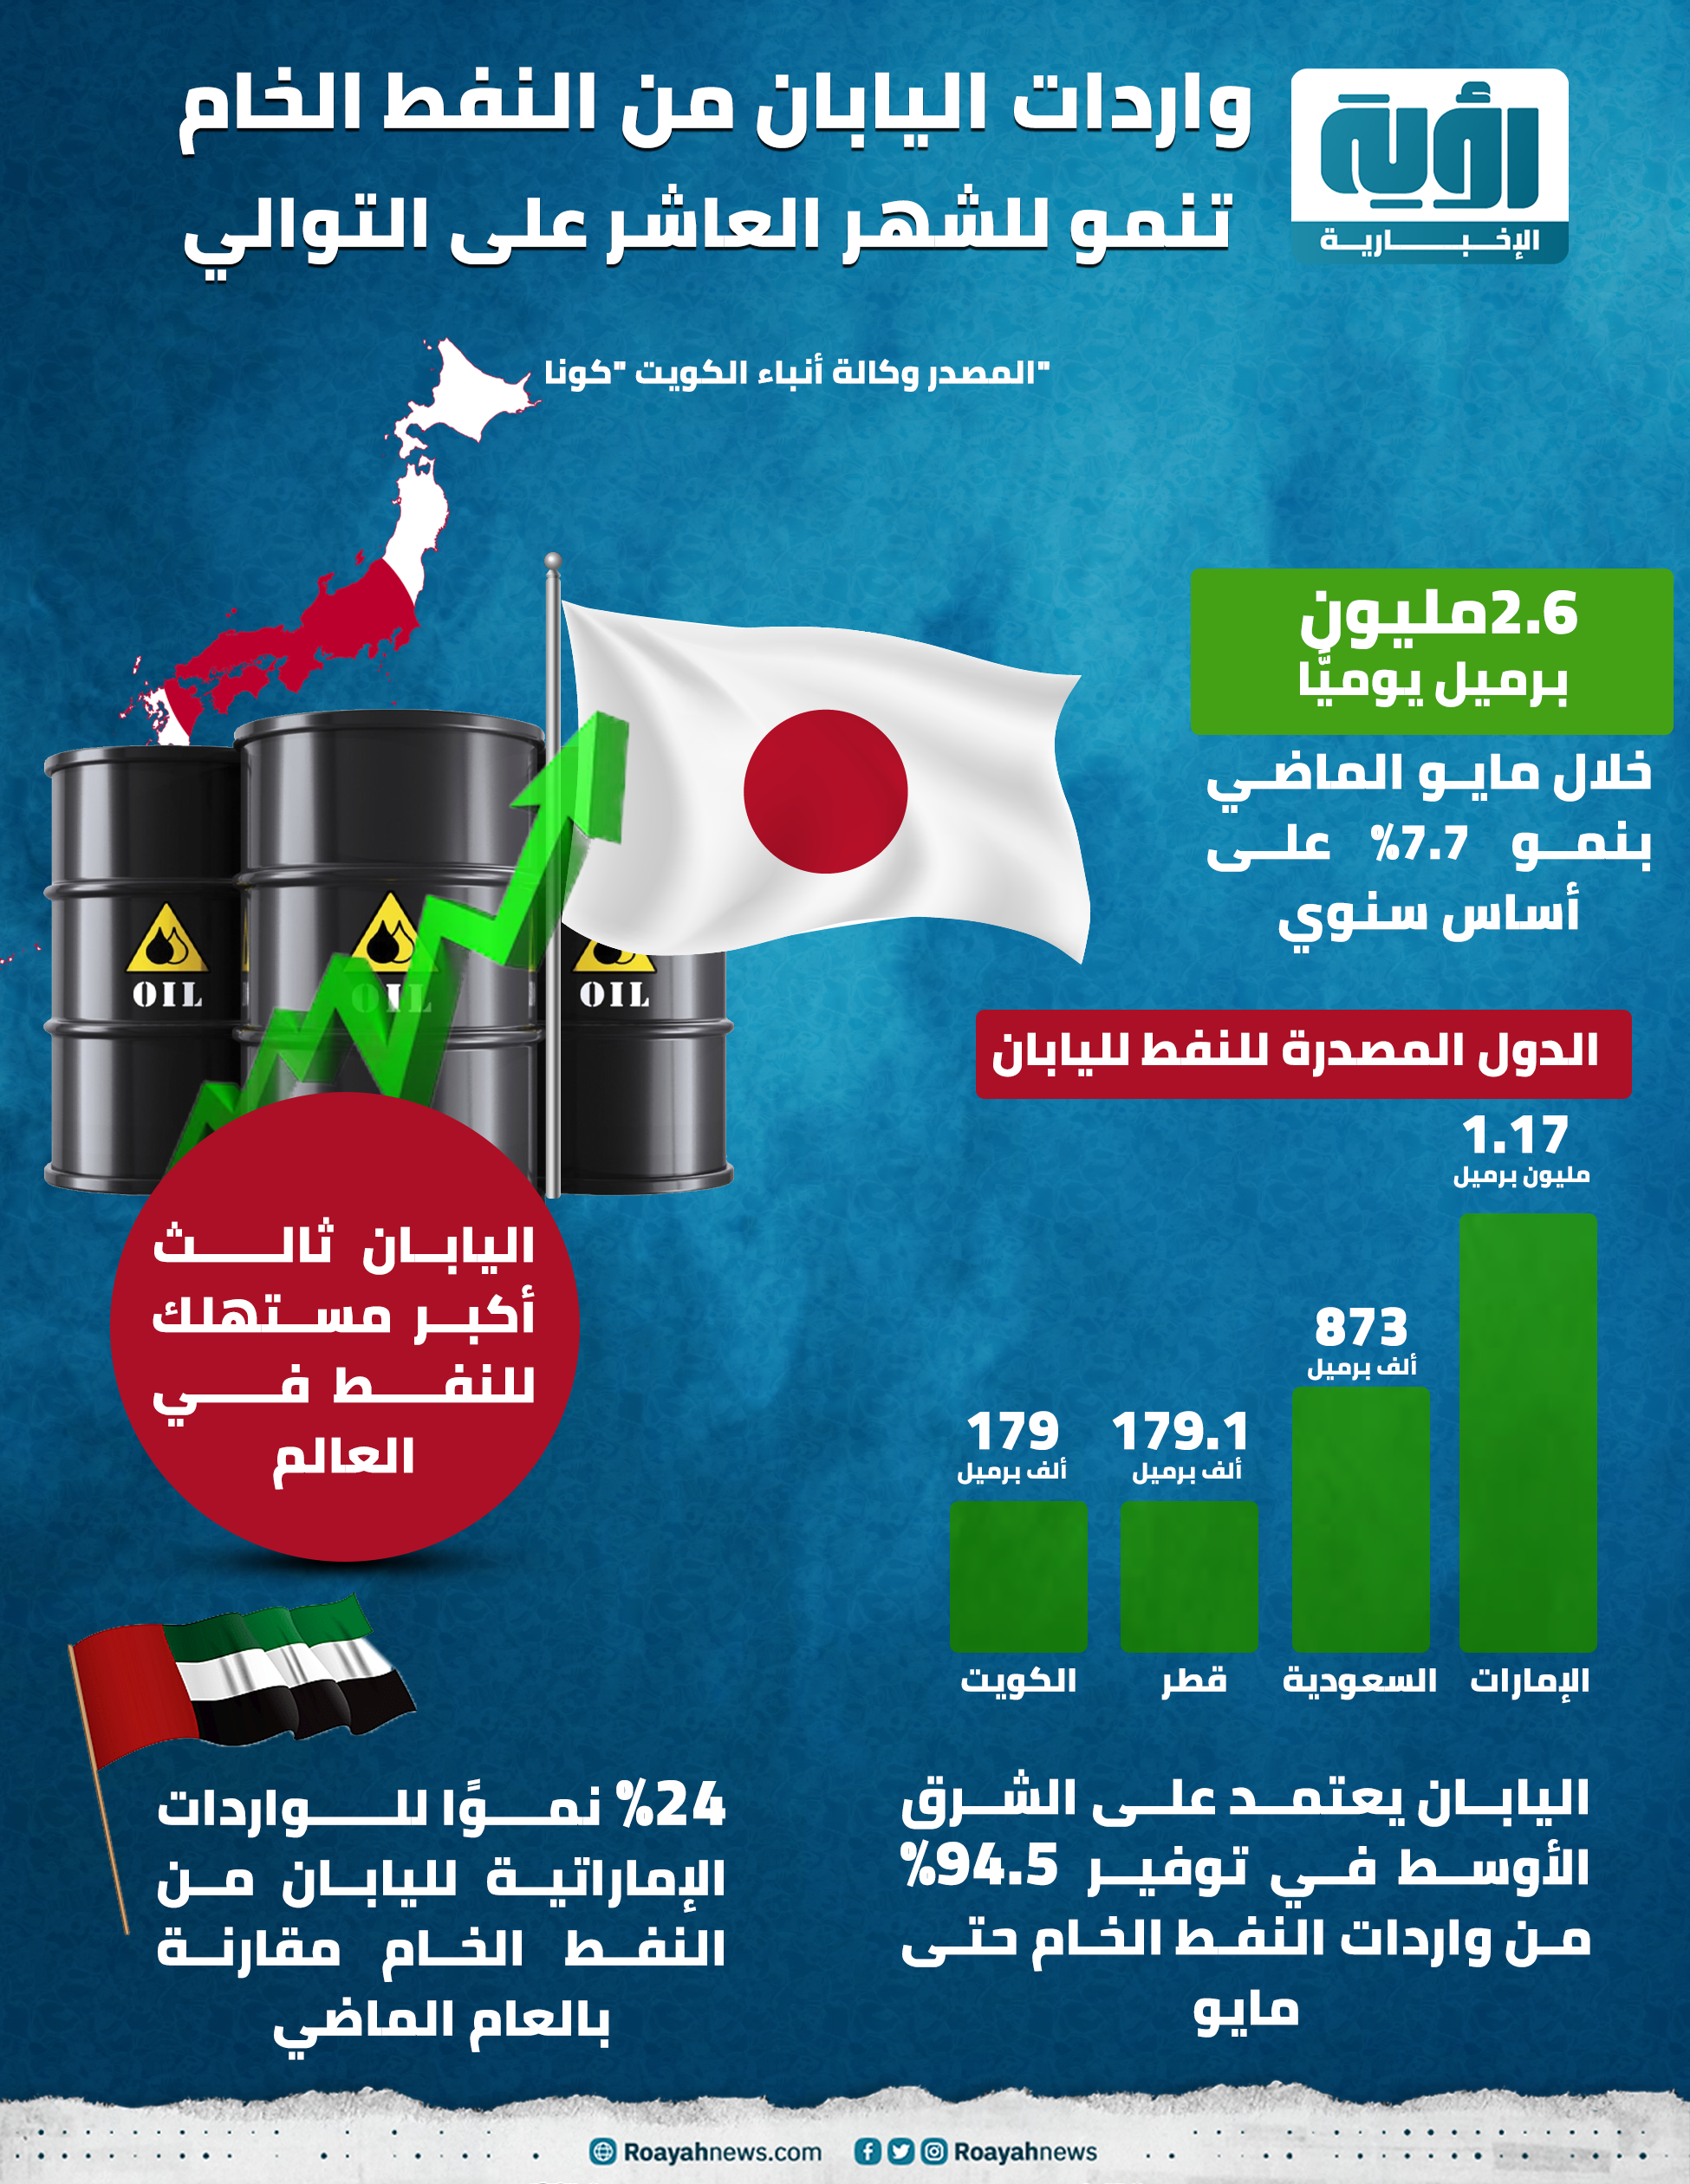 واردات اليابان من النفط الخام تنمو للشهر العاشر على التوالي